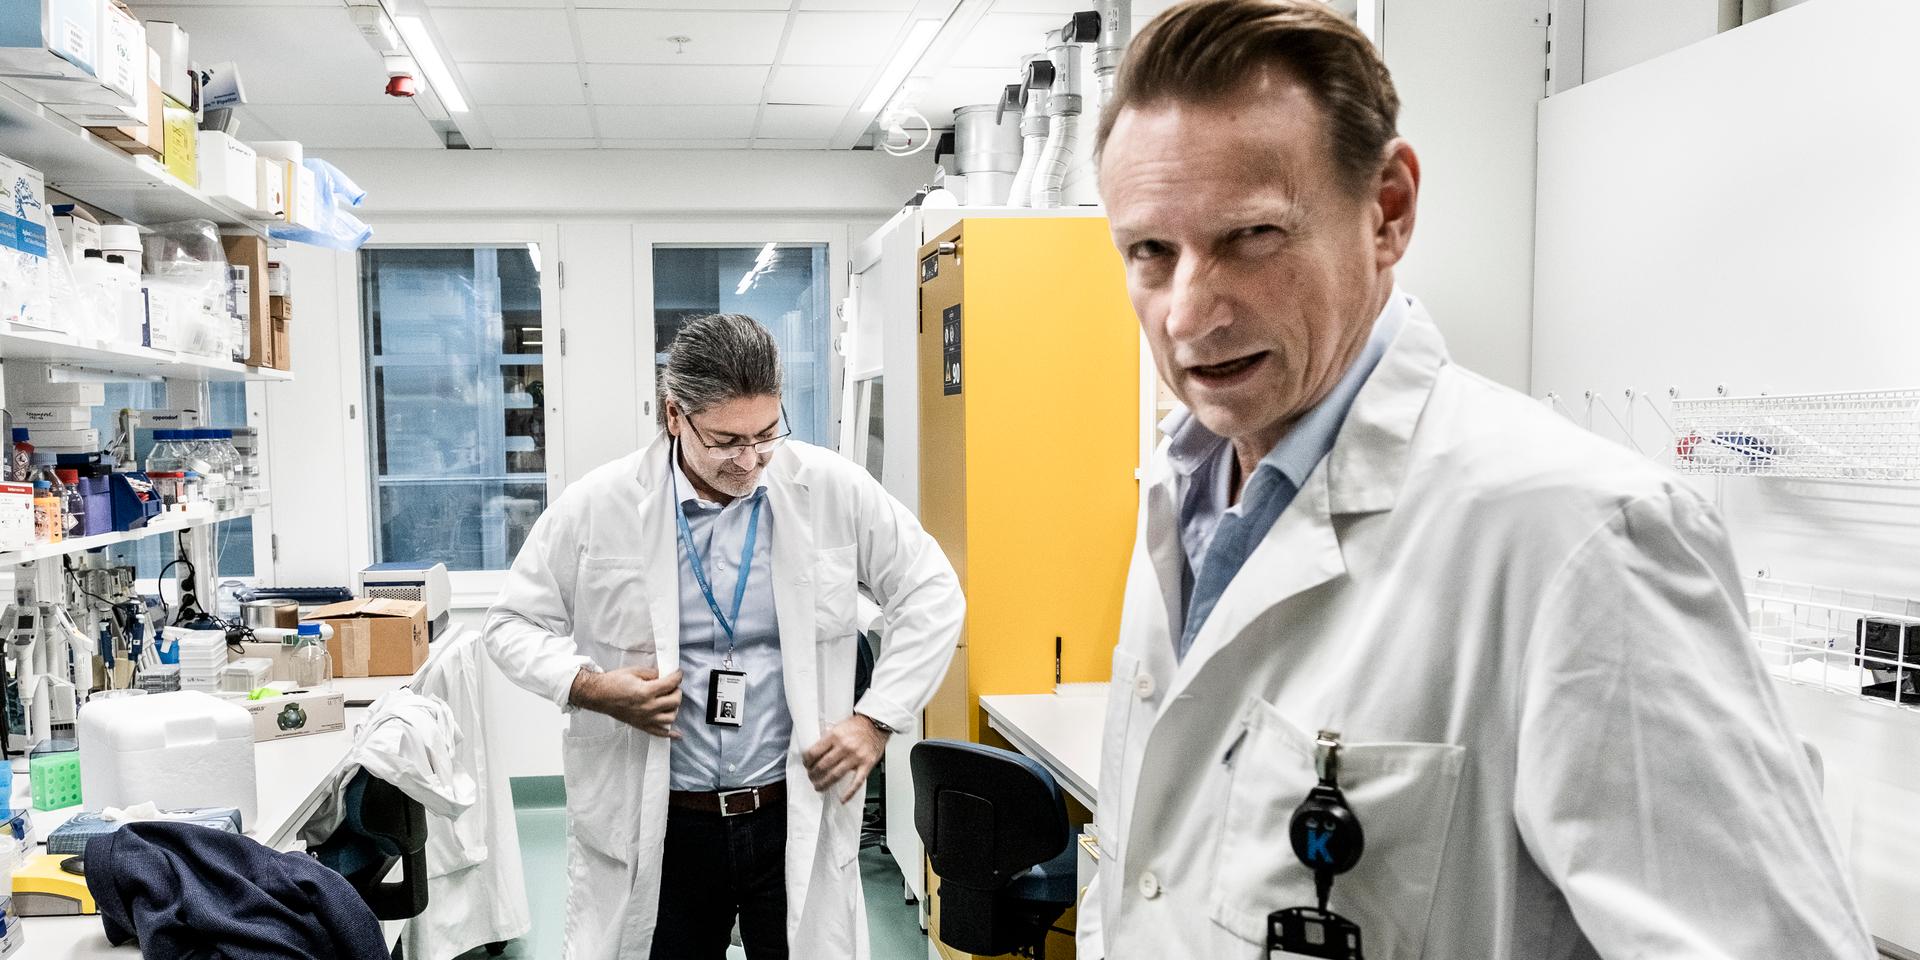  Matti Sällberg, till höger, är vaccinforskare och professor på Karolinska Institutet.